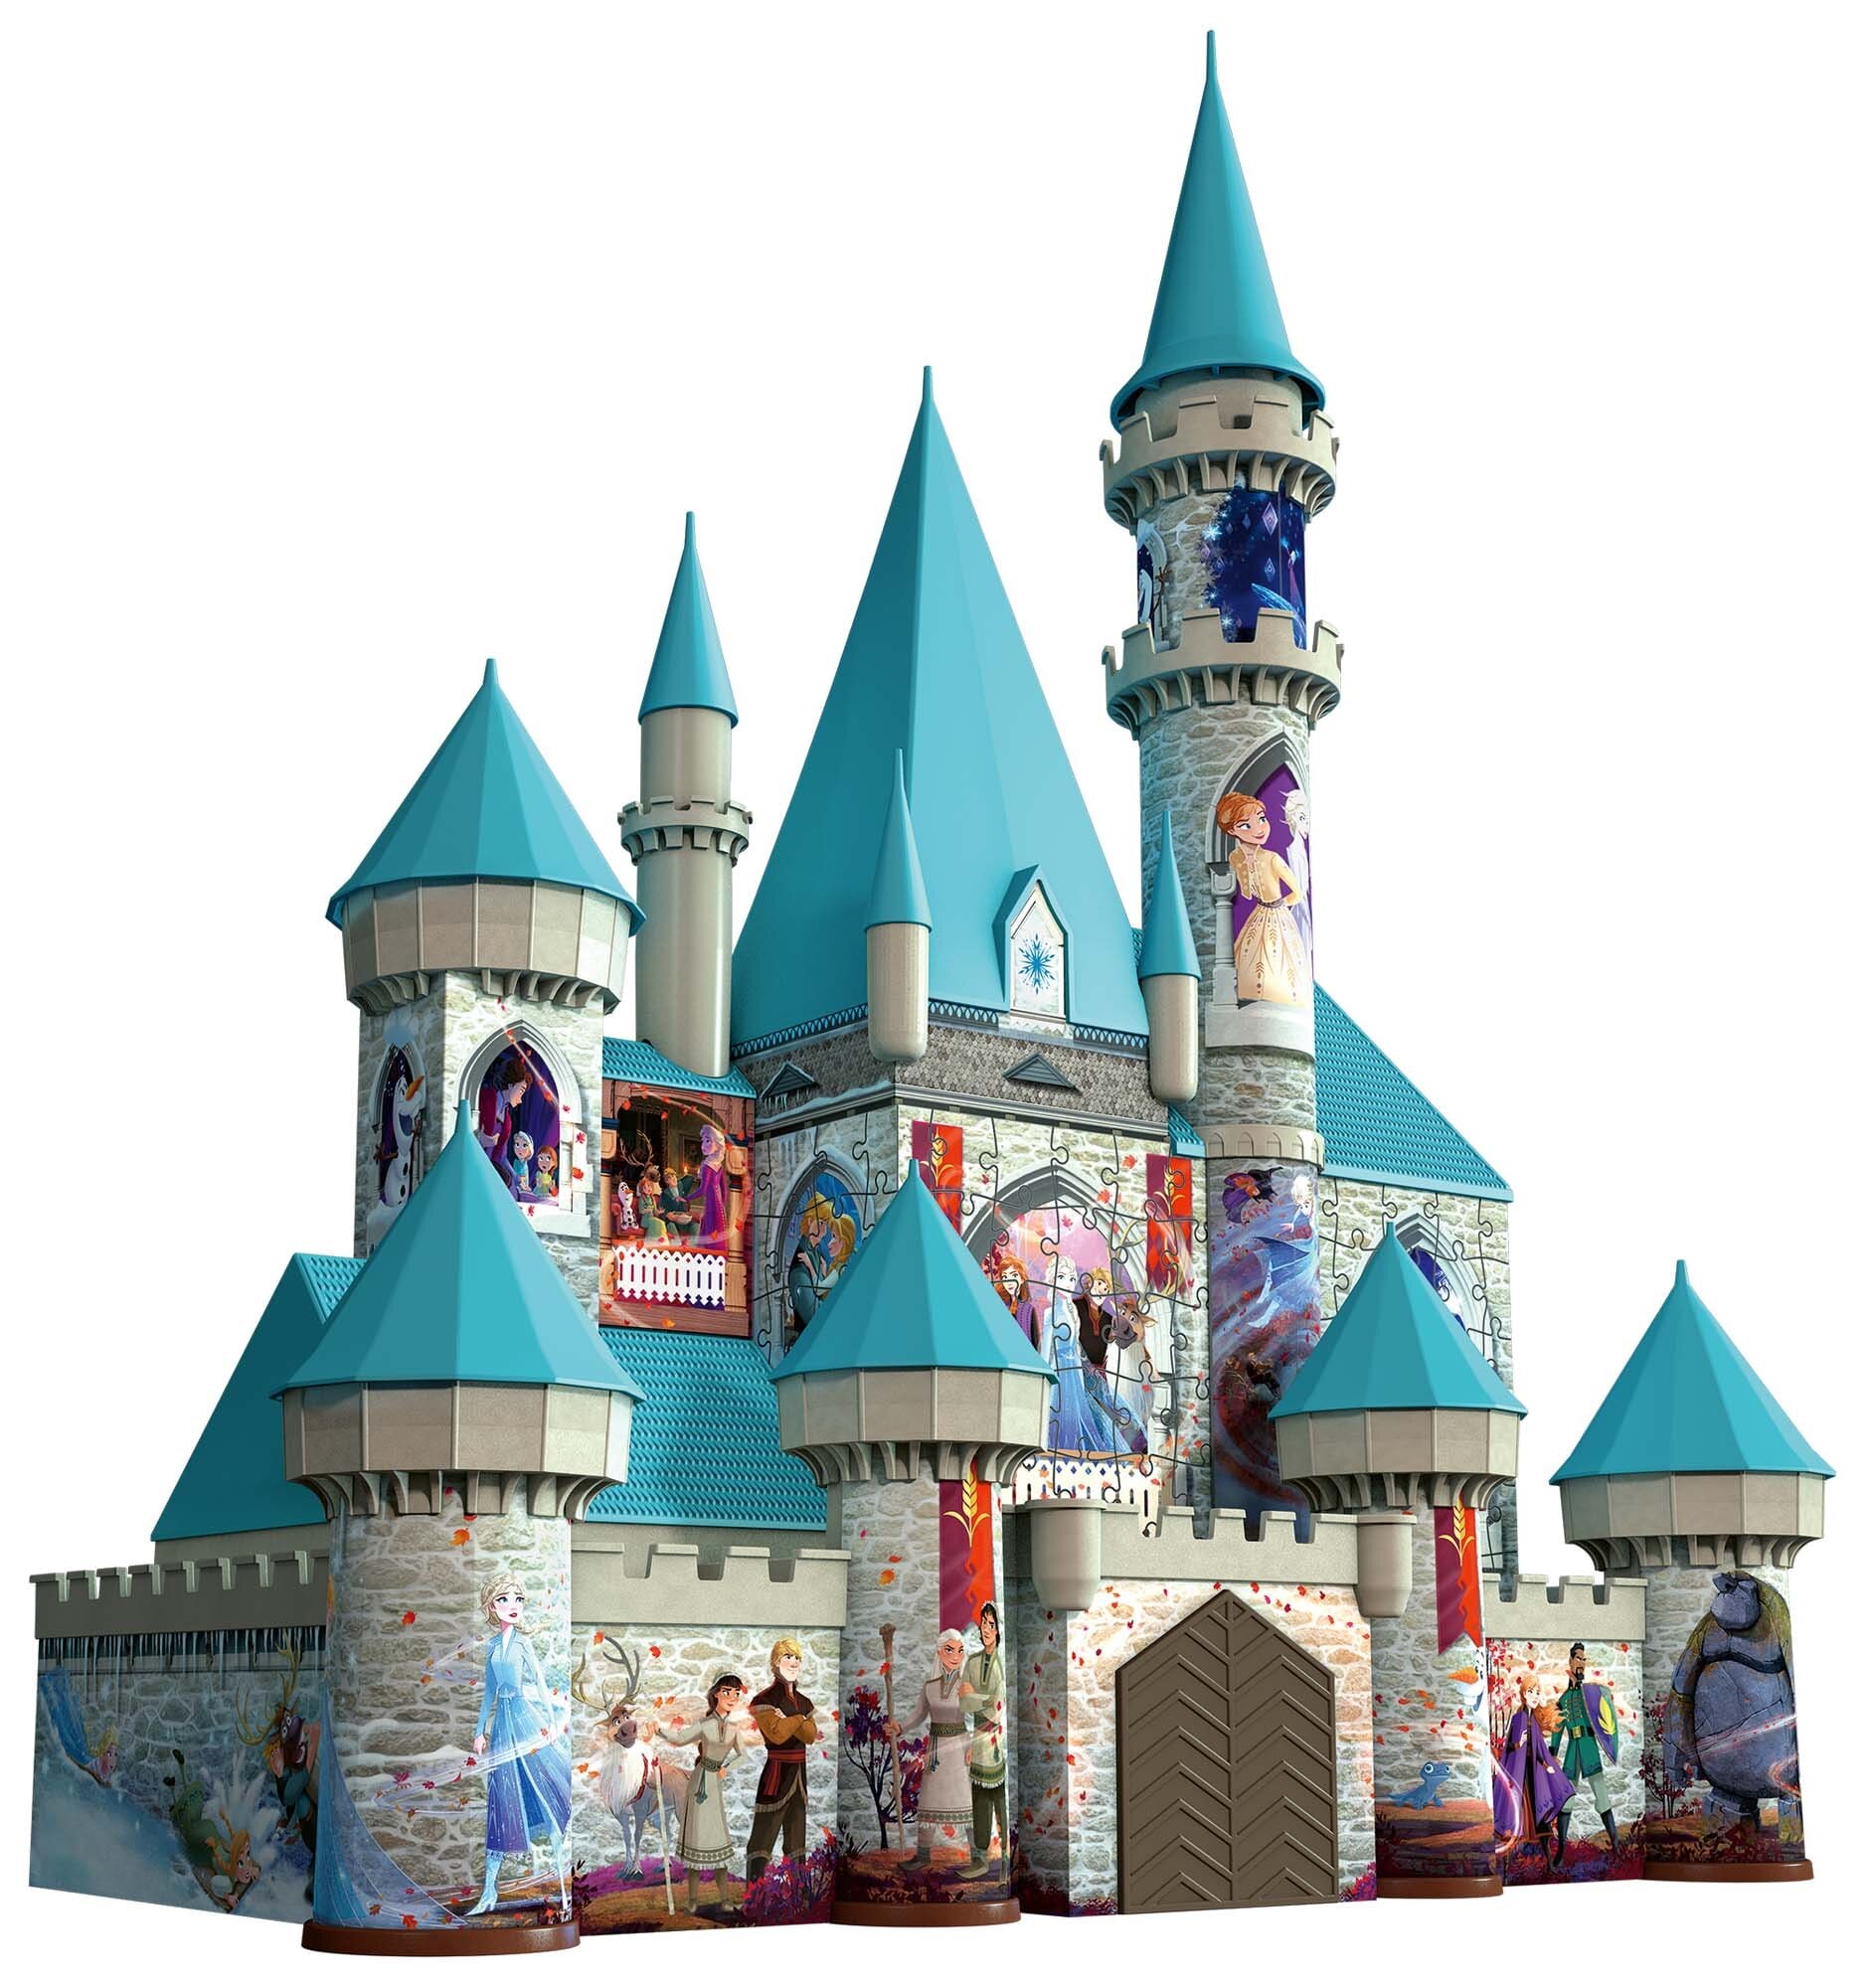 Ravensburger 3D Puslespil, Disney Frozen Castle 216 brikker